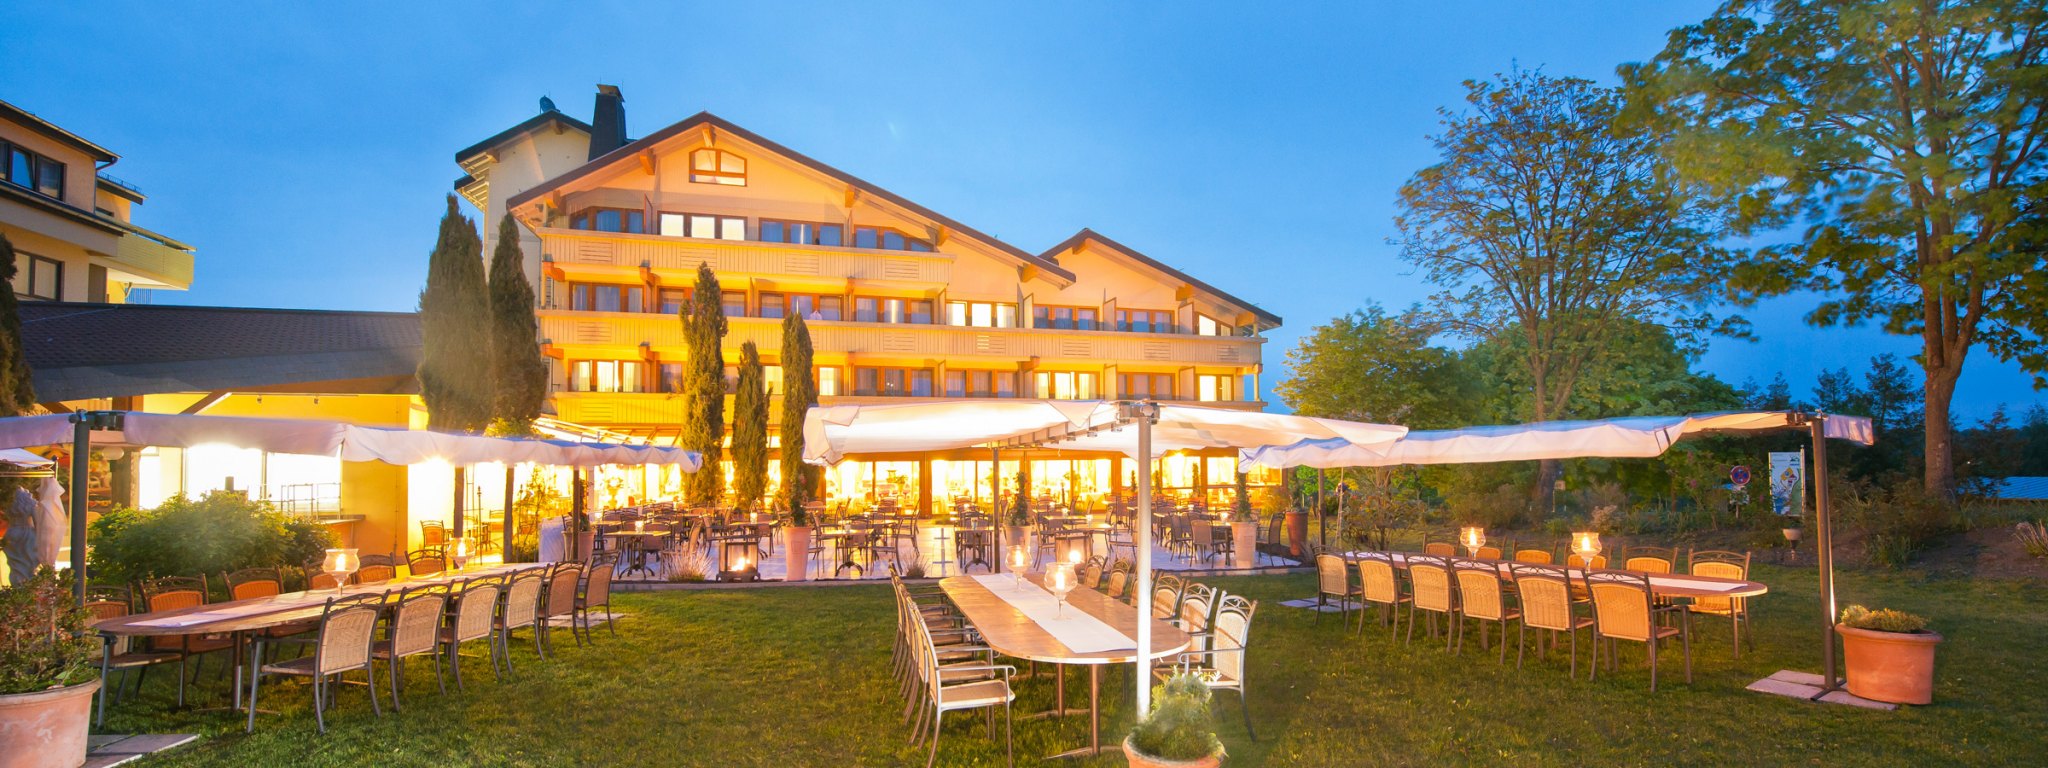 Dormero übernimmt früheres Dorint-Golf-Resort in Windhagen